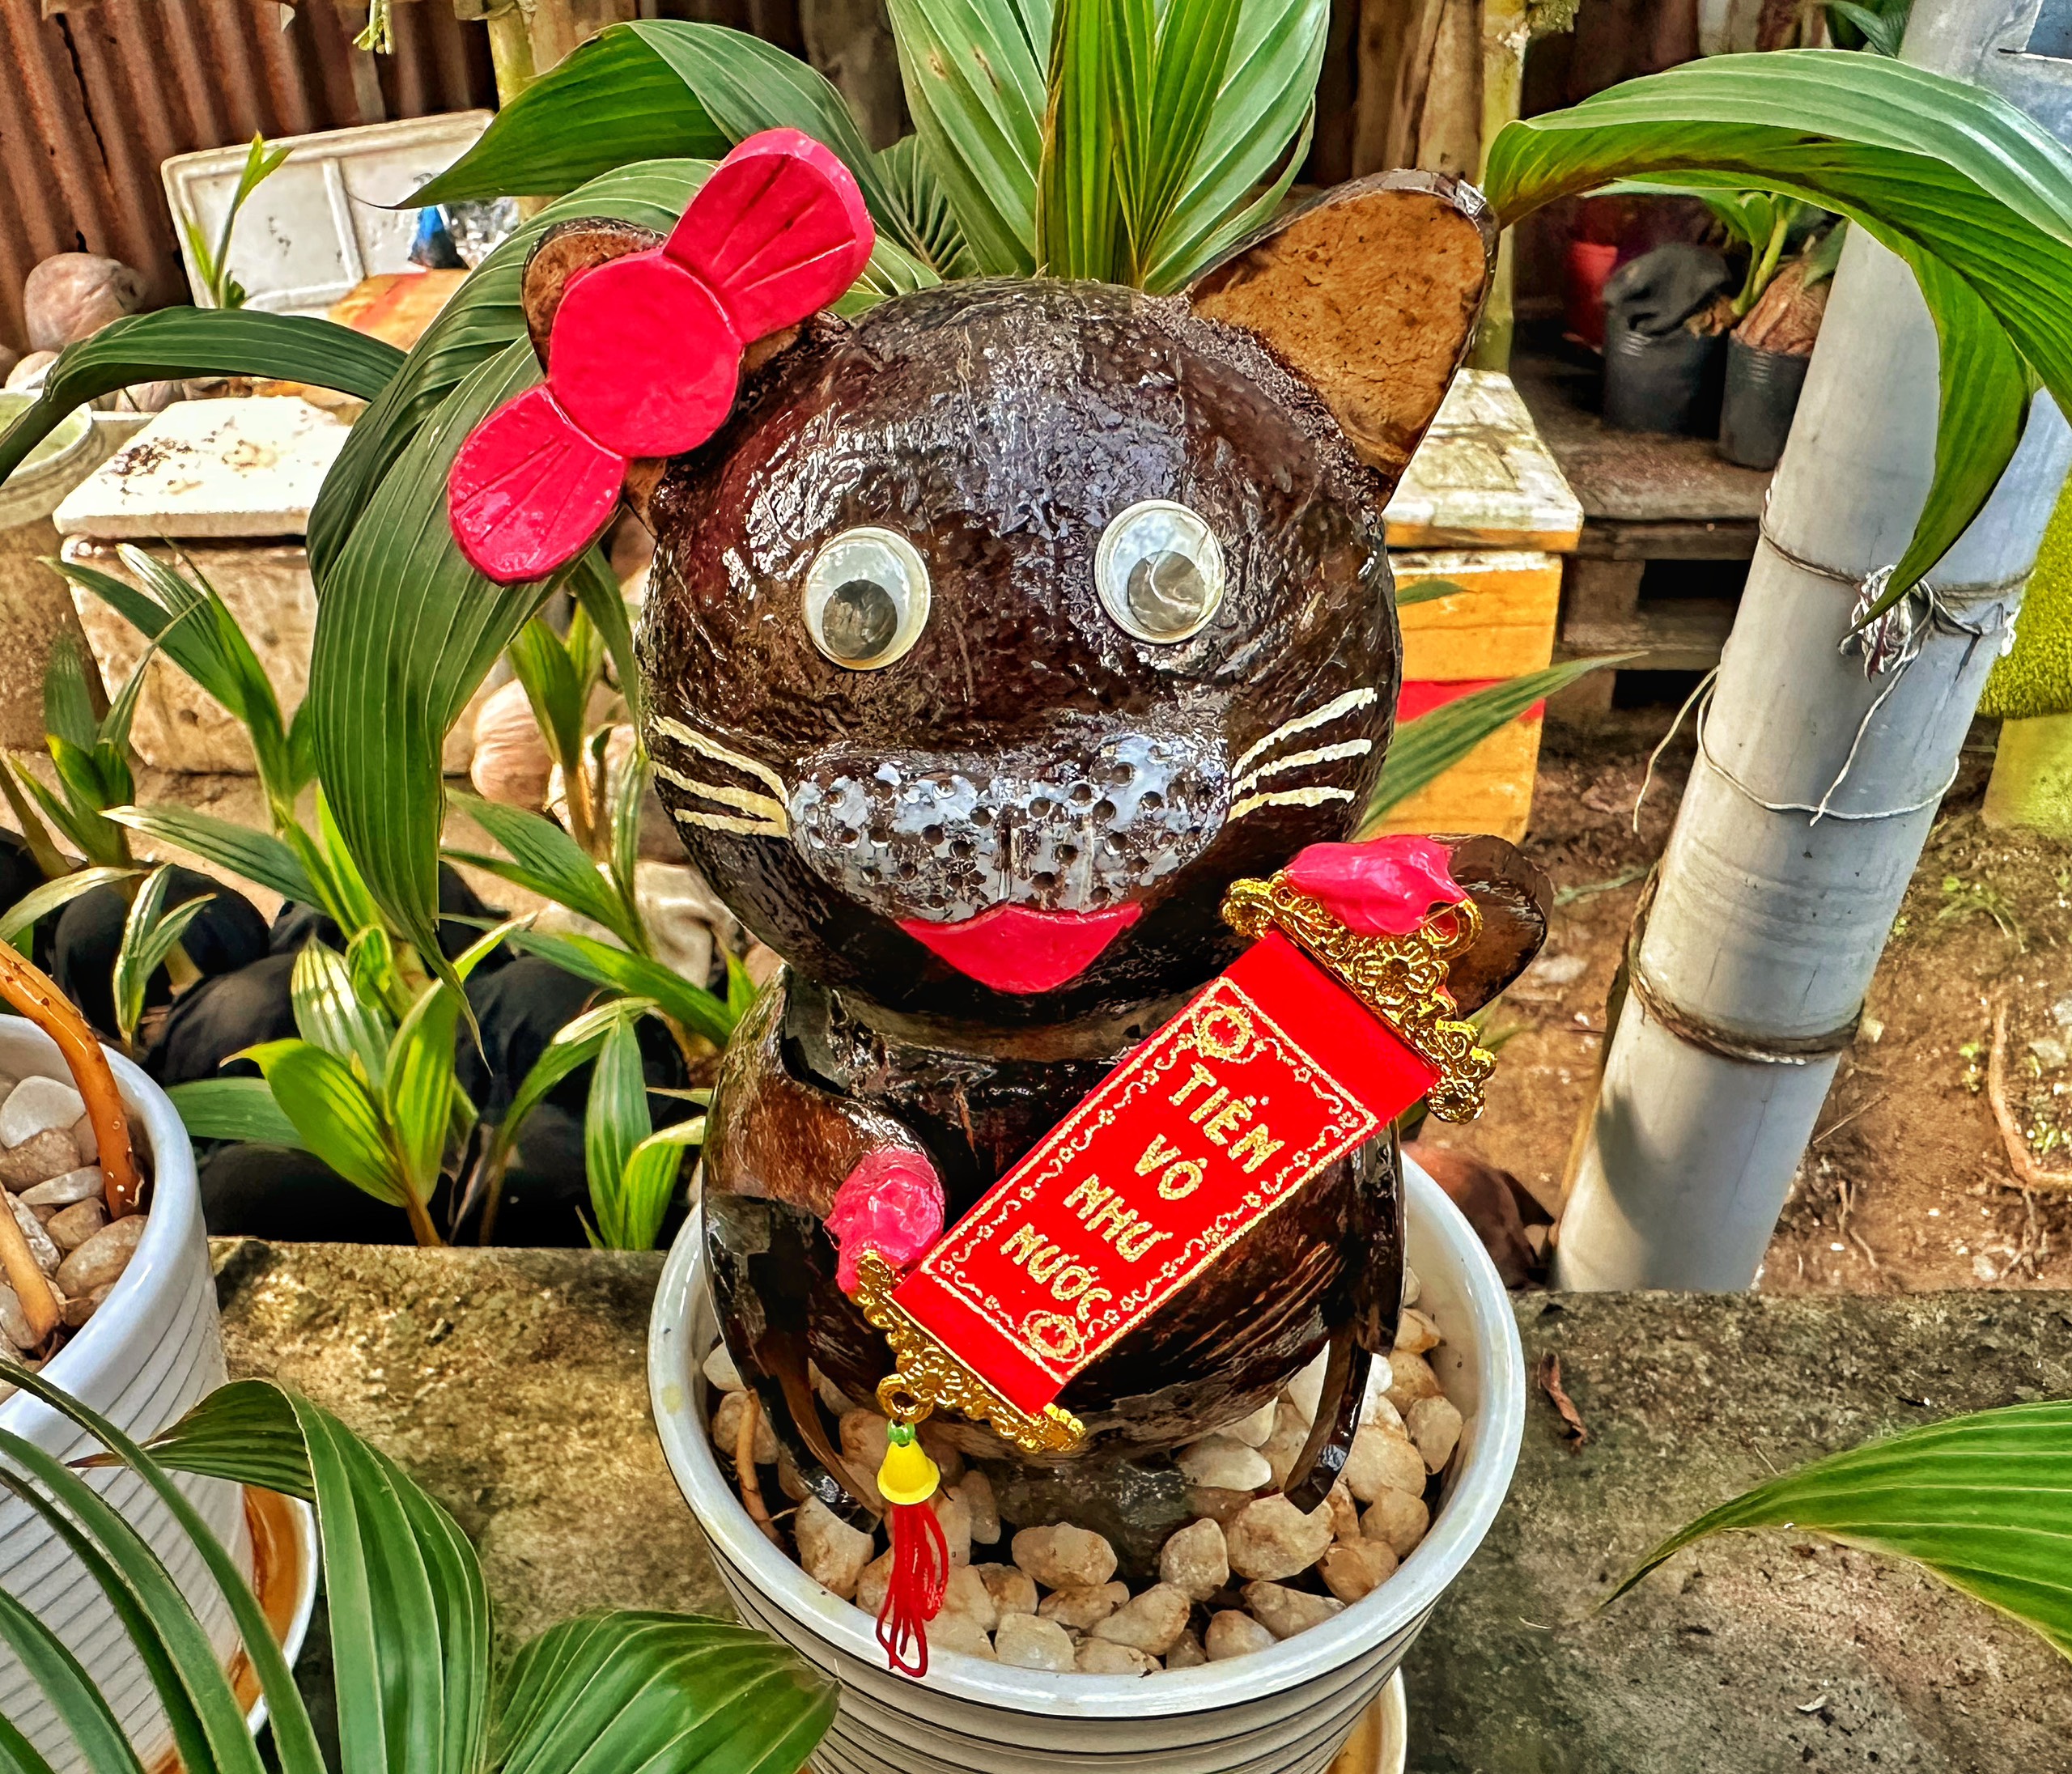 Bonsai dừa con mèo là một sự kết hợp độc đáo và đẹp mắt giữa cây cối và hình ảnh con mèo. Hãy chiêm ngưỡng những thiết kế bonsai dừa con mèo độc lạ và tìm hiểu về cách chăm sóc để giữ lại vẻ đẹp của chúng.